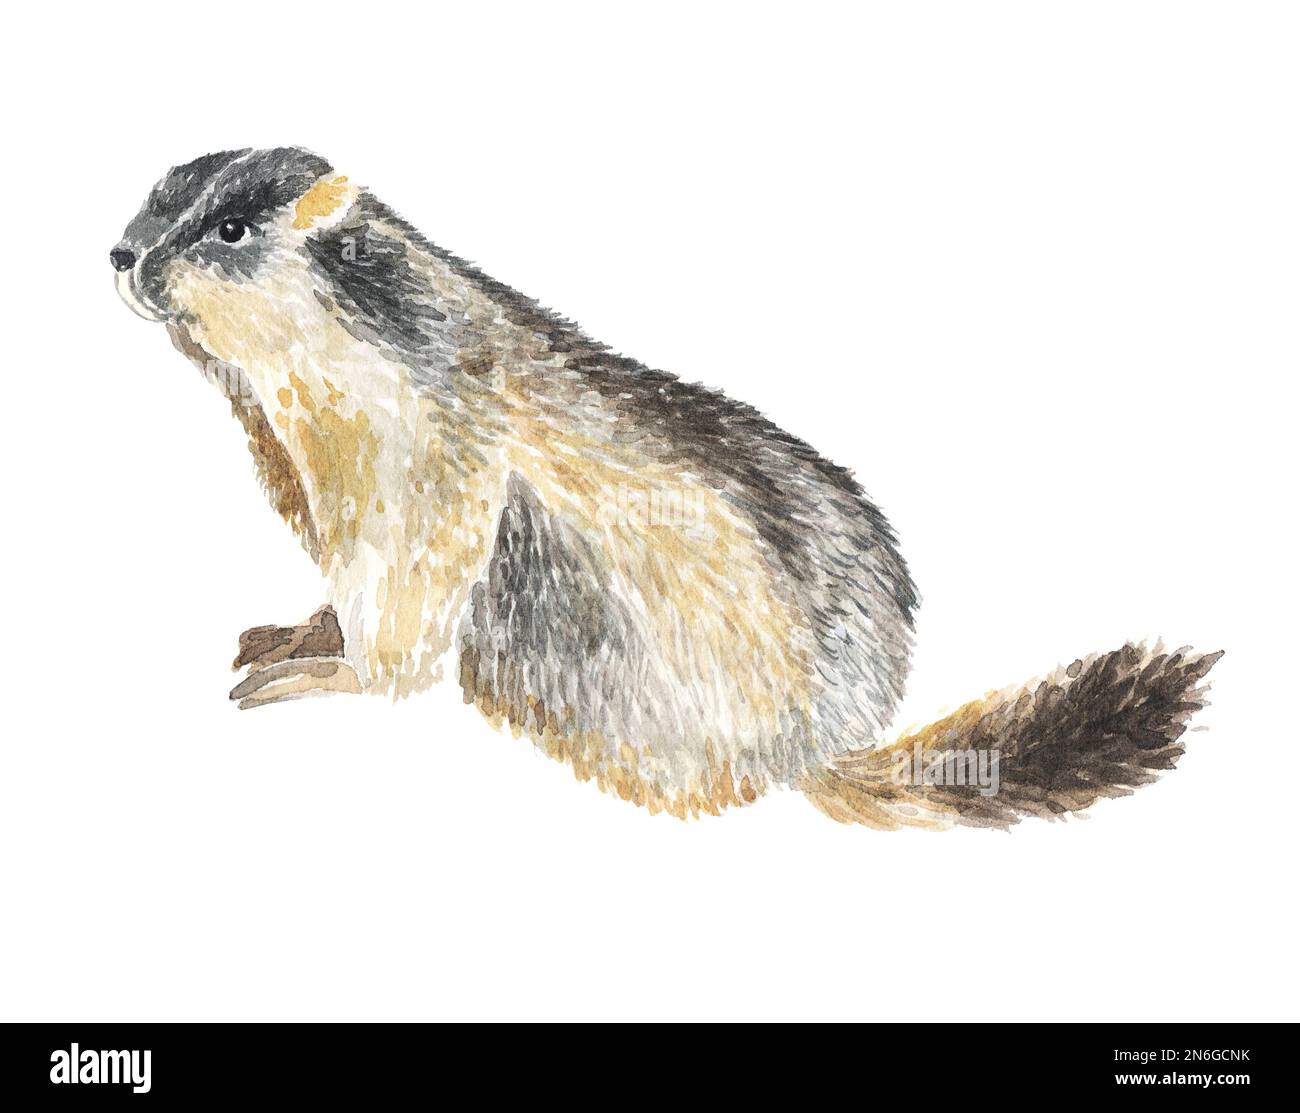 aquarelle de la marmotte peinture à la main illustration animal sur fond blanc isolé réaliste botanique Banque D'Images